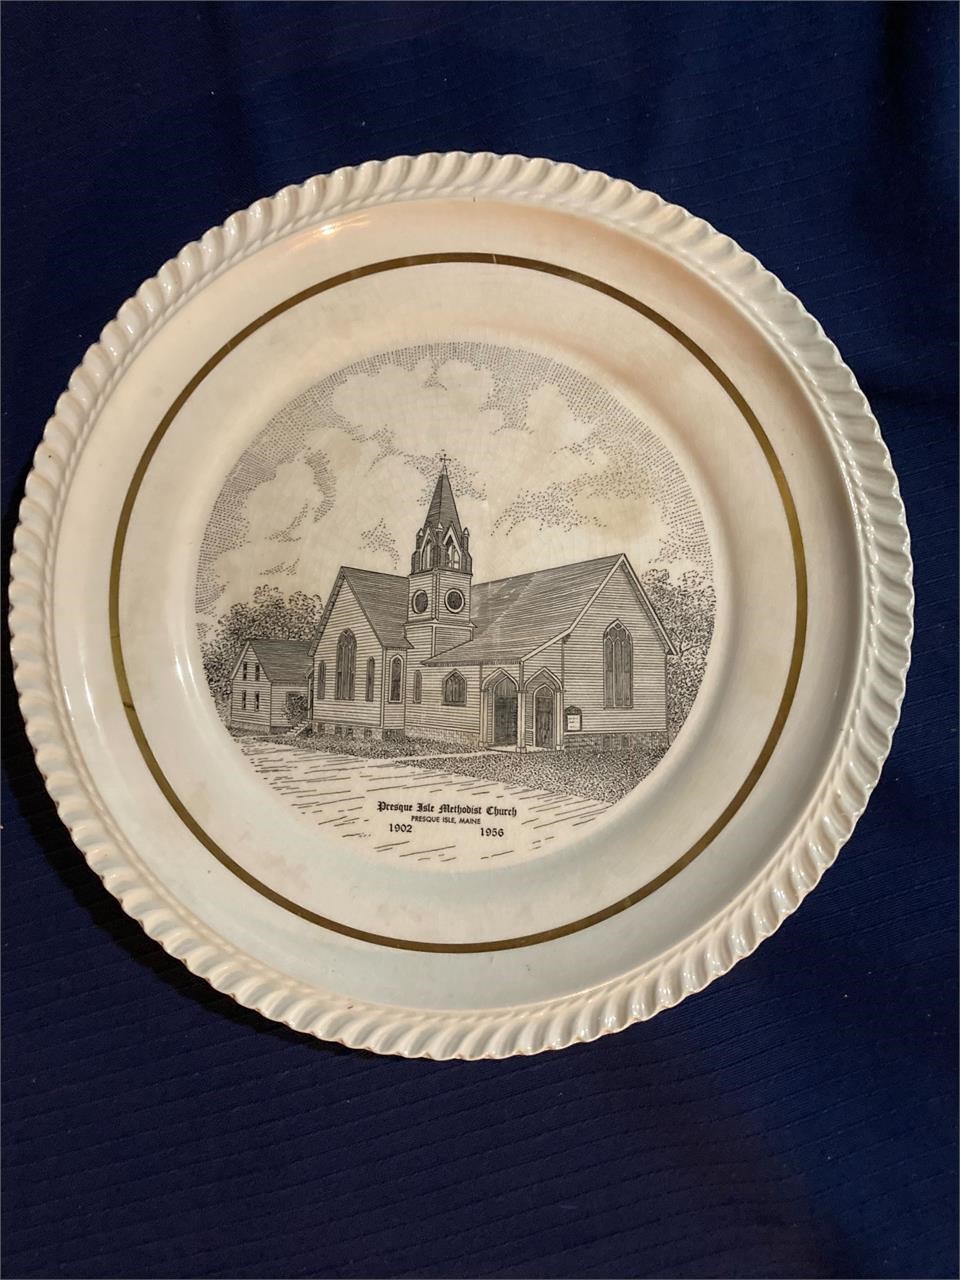 Presque Isle Commemorative Methodist Church Plate